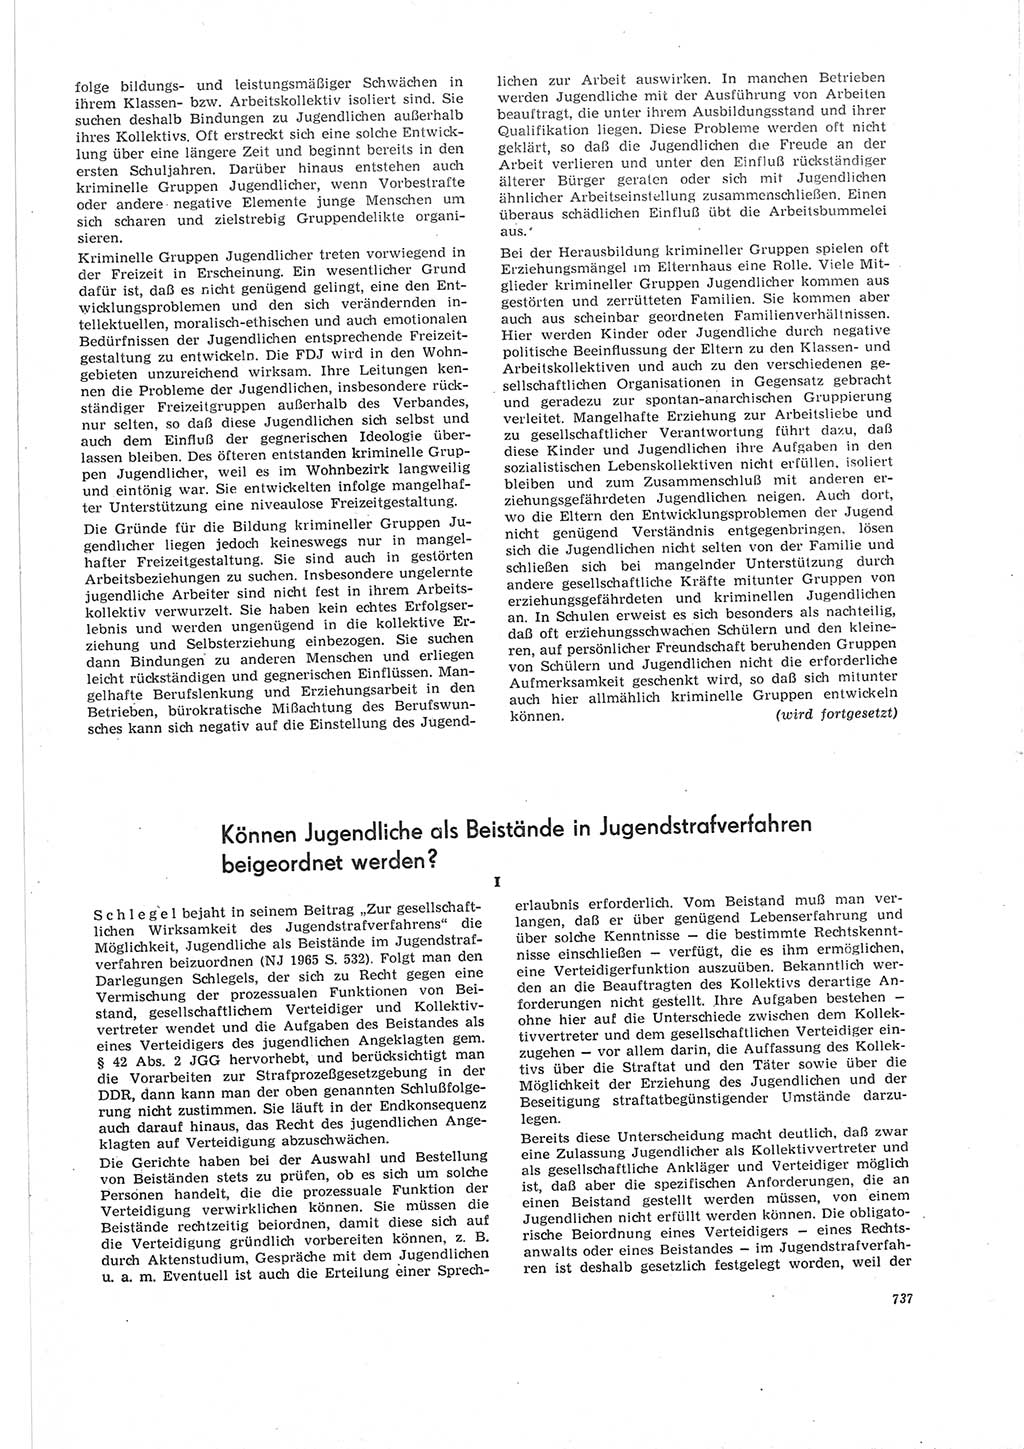 Neue Justiz (NJ), Zeitschrift für Recht und Rechtswissenschaft [Deutsche Demokratische Republik (DDR)], 19. Jahrgang 1965, Seite 737 (NJ DDR 1965, S. 737)